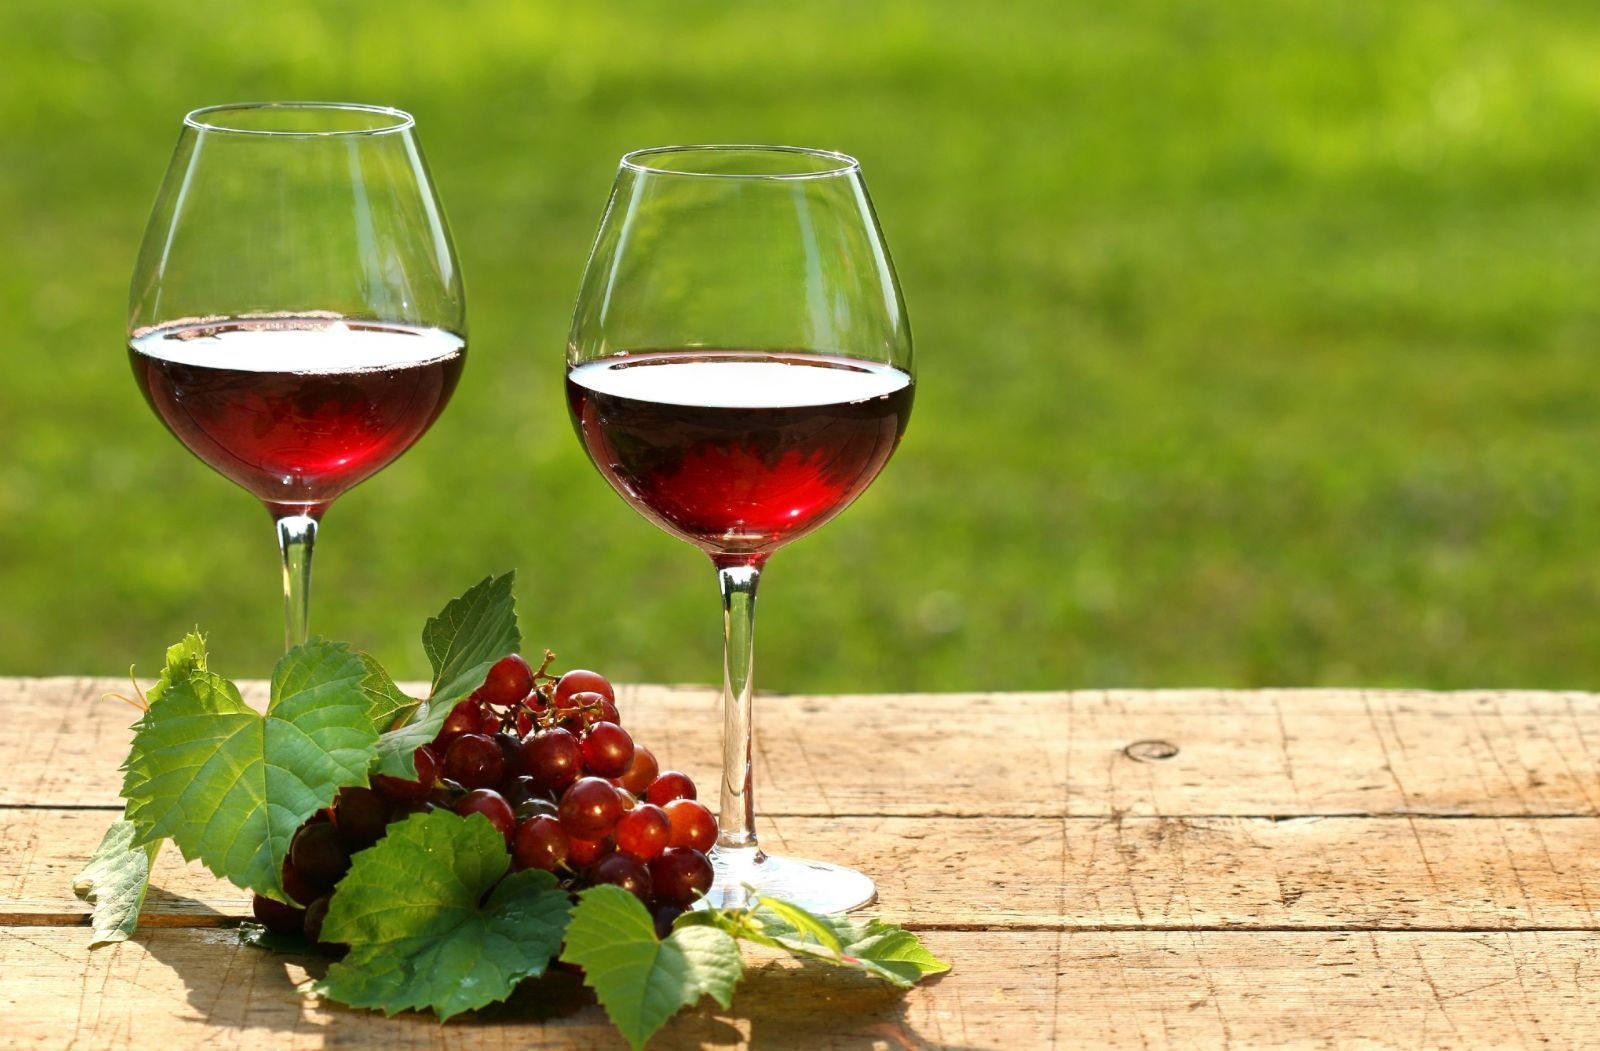 Saiba como escolher um vinho bom e barato - Blog de Culinária